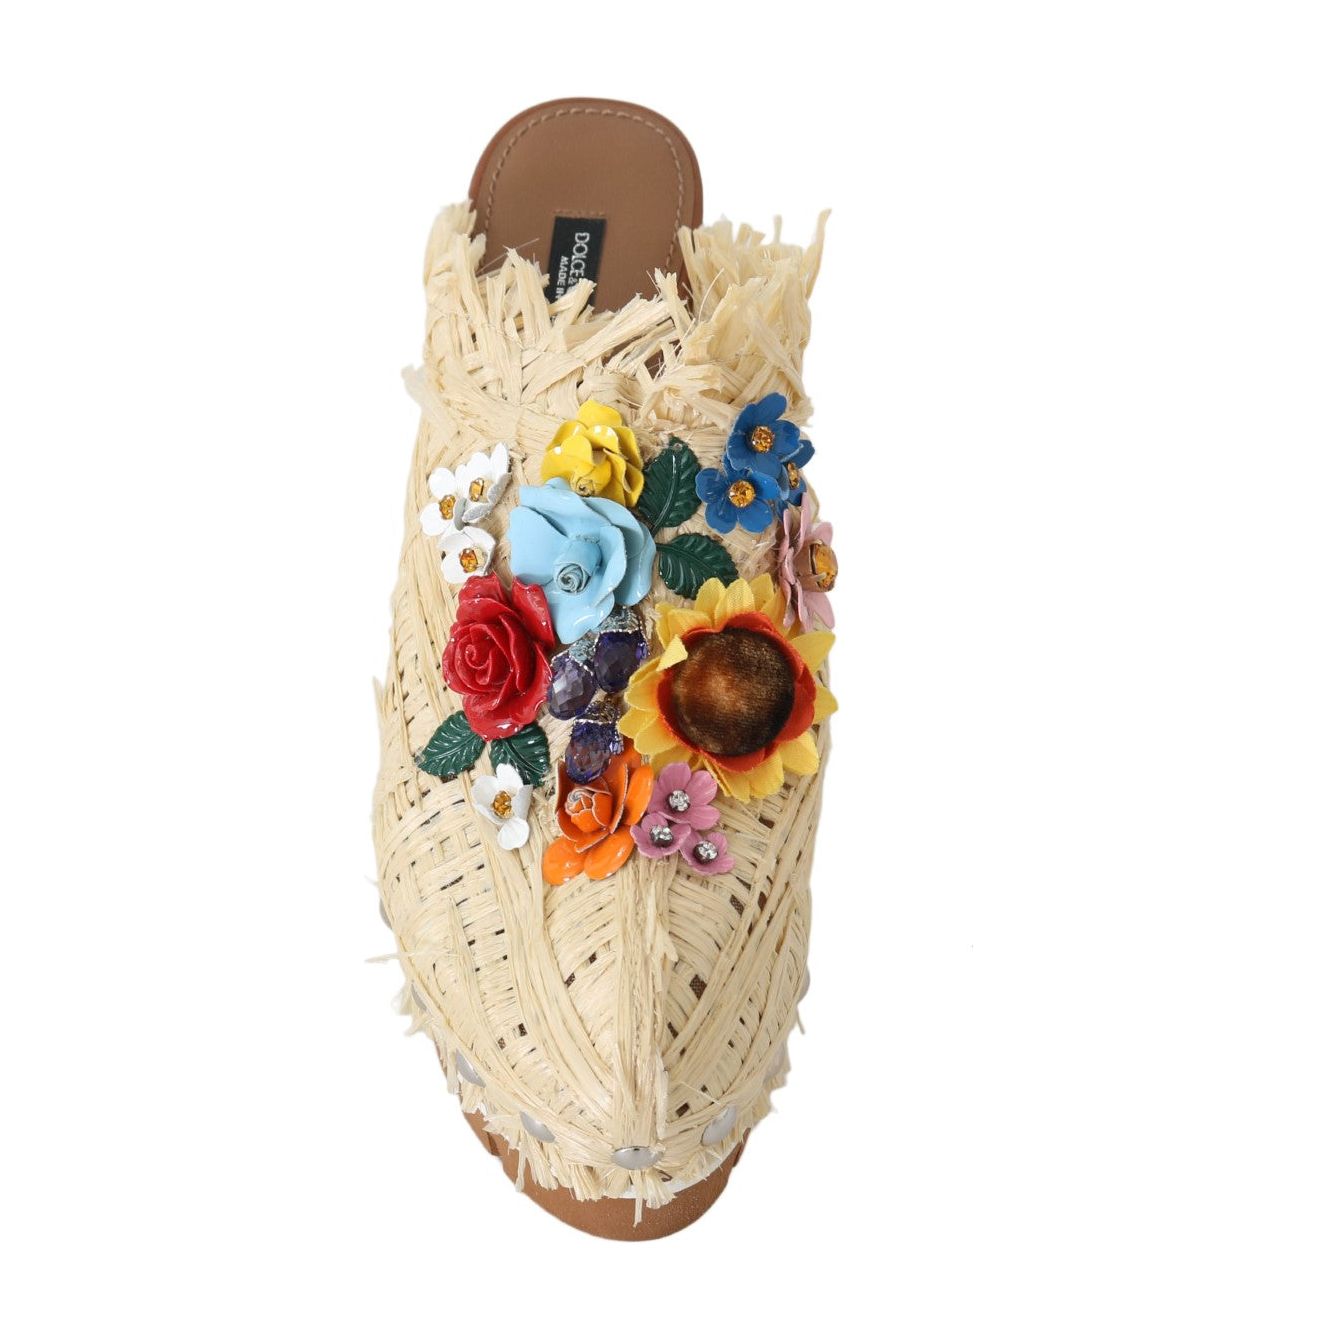 Dolce & Gabbana | Chic Embellished Wooden Slides| McRichard Designer Brands   